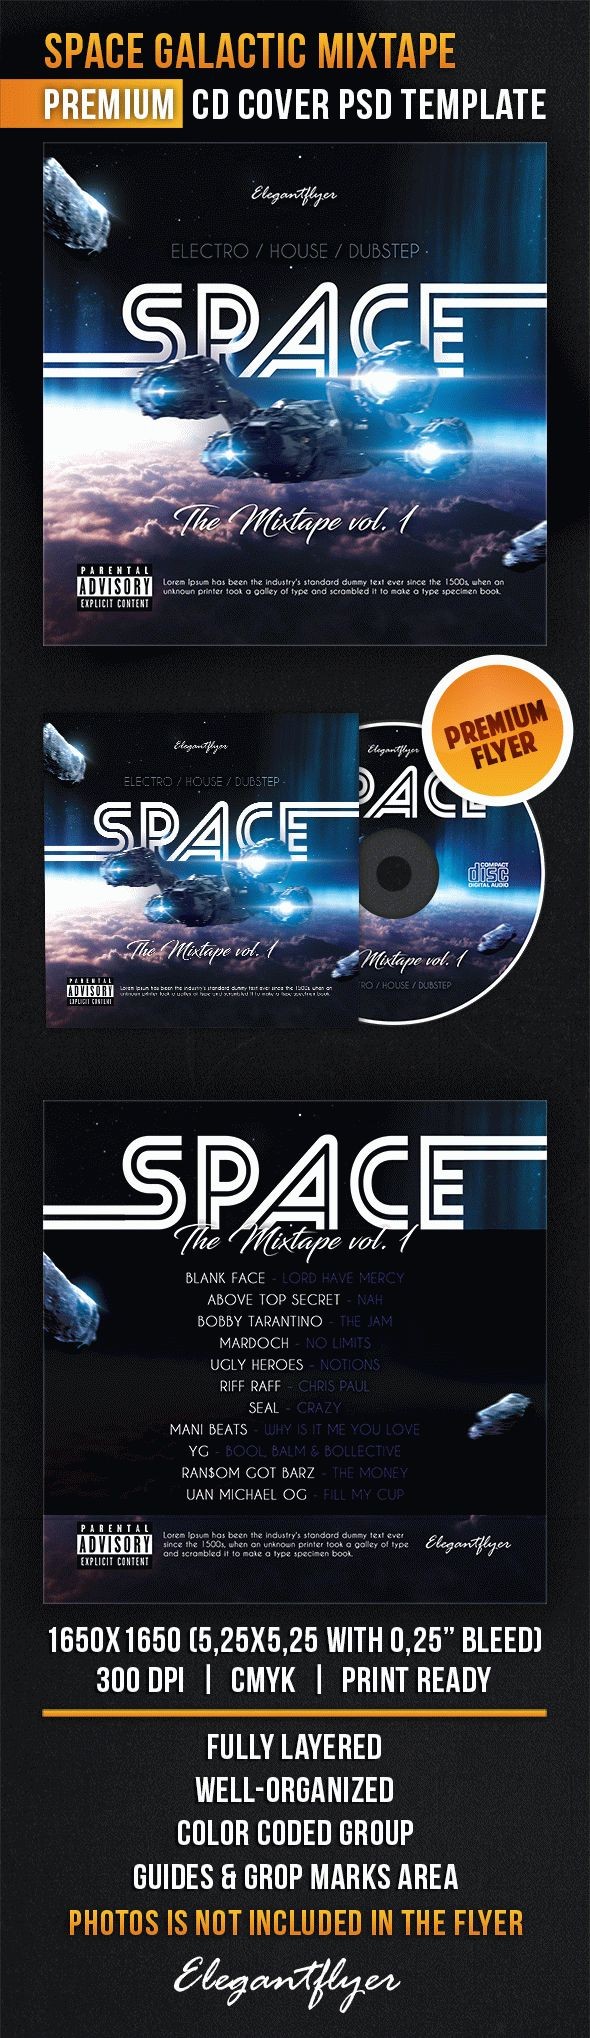 Mixtape Galáctico Espacial by ElegantFlyer